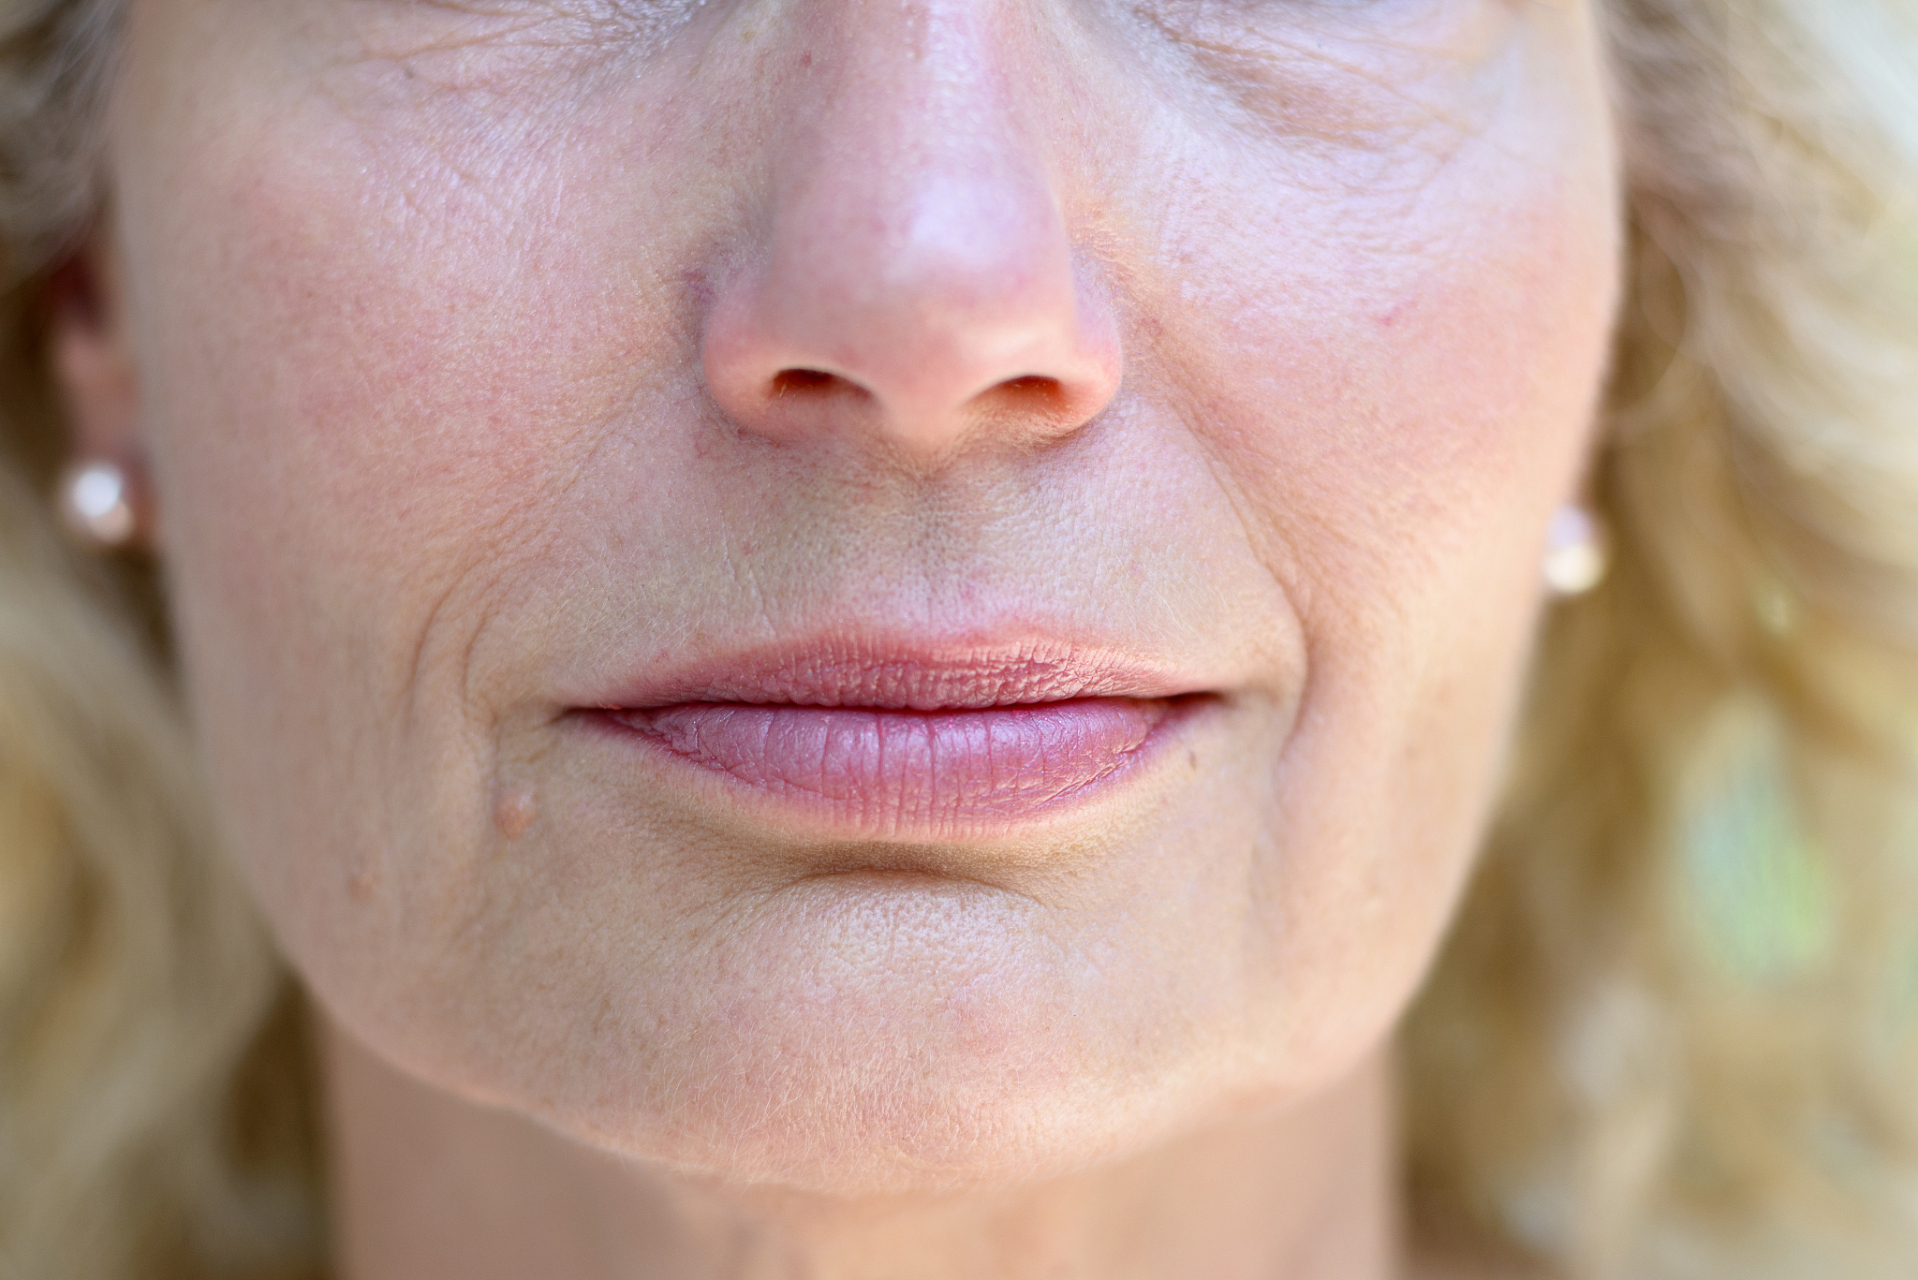 嘴周为什么会发生下垂和松弛?要如何有效对抗衰老?本文带你了解